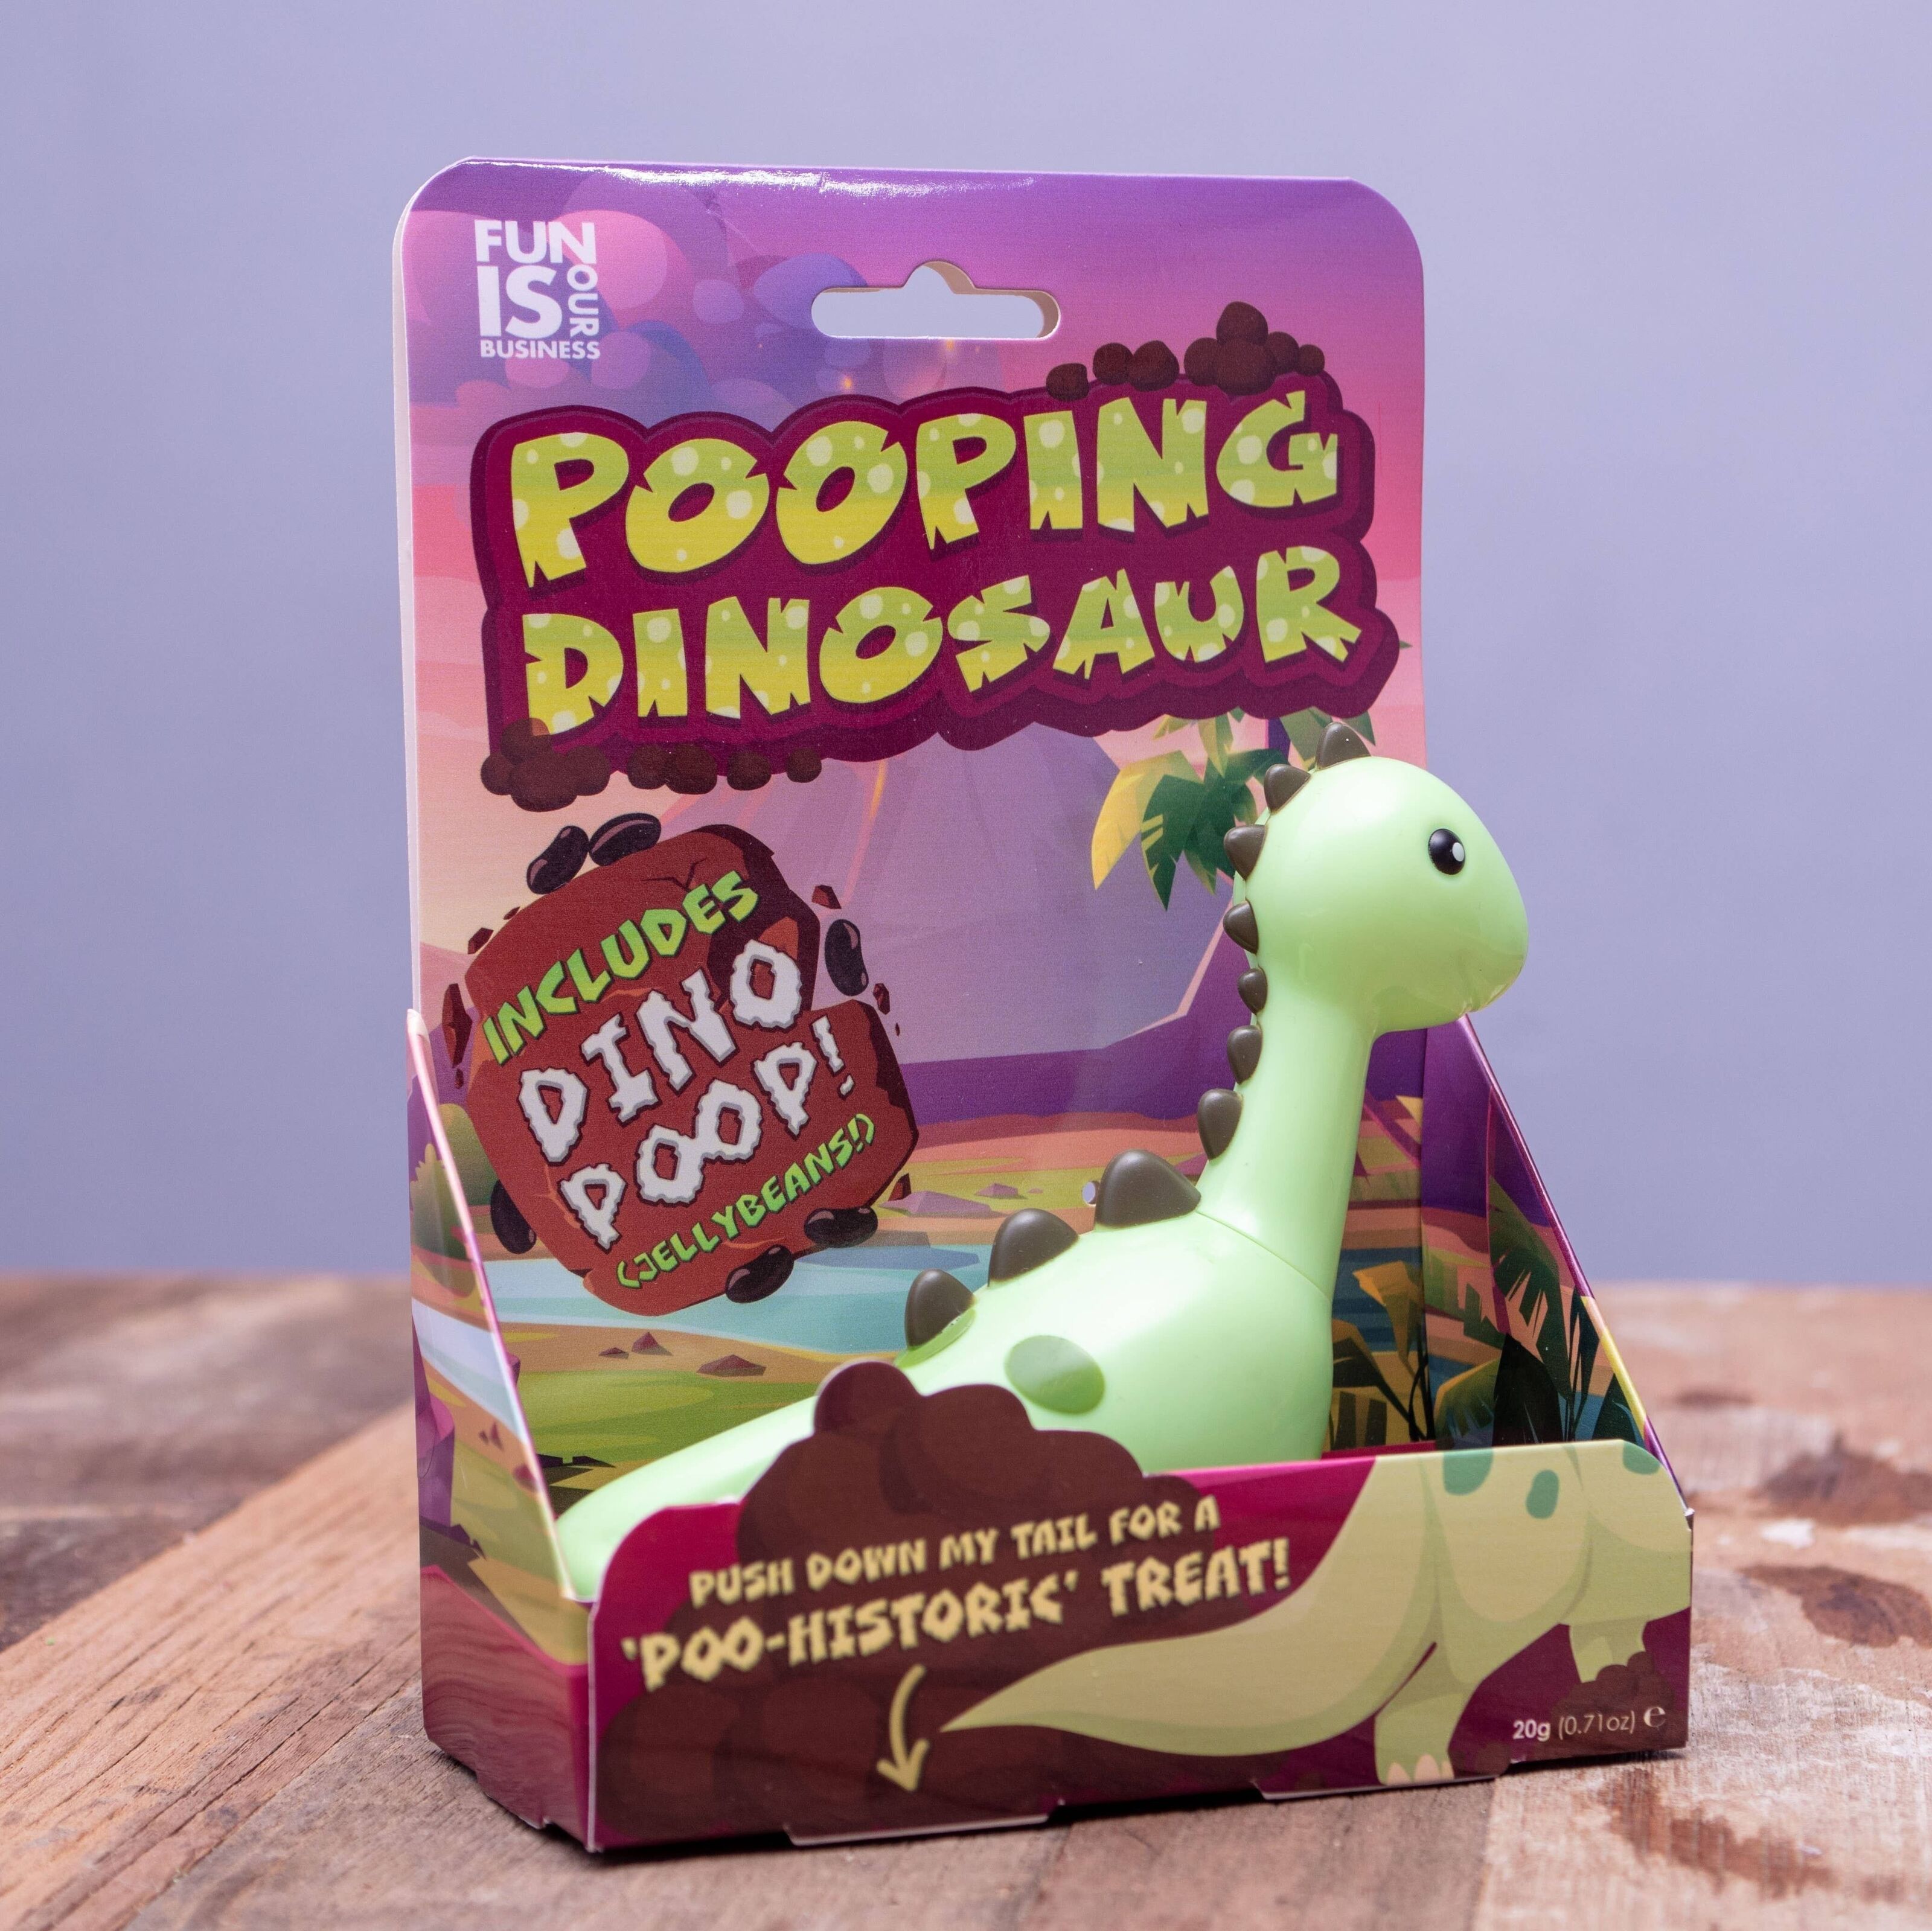 Achat Jouet dinosaure caca - Jouets dinosaures pour enfants en gros